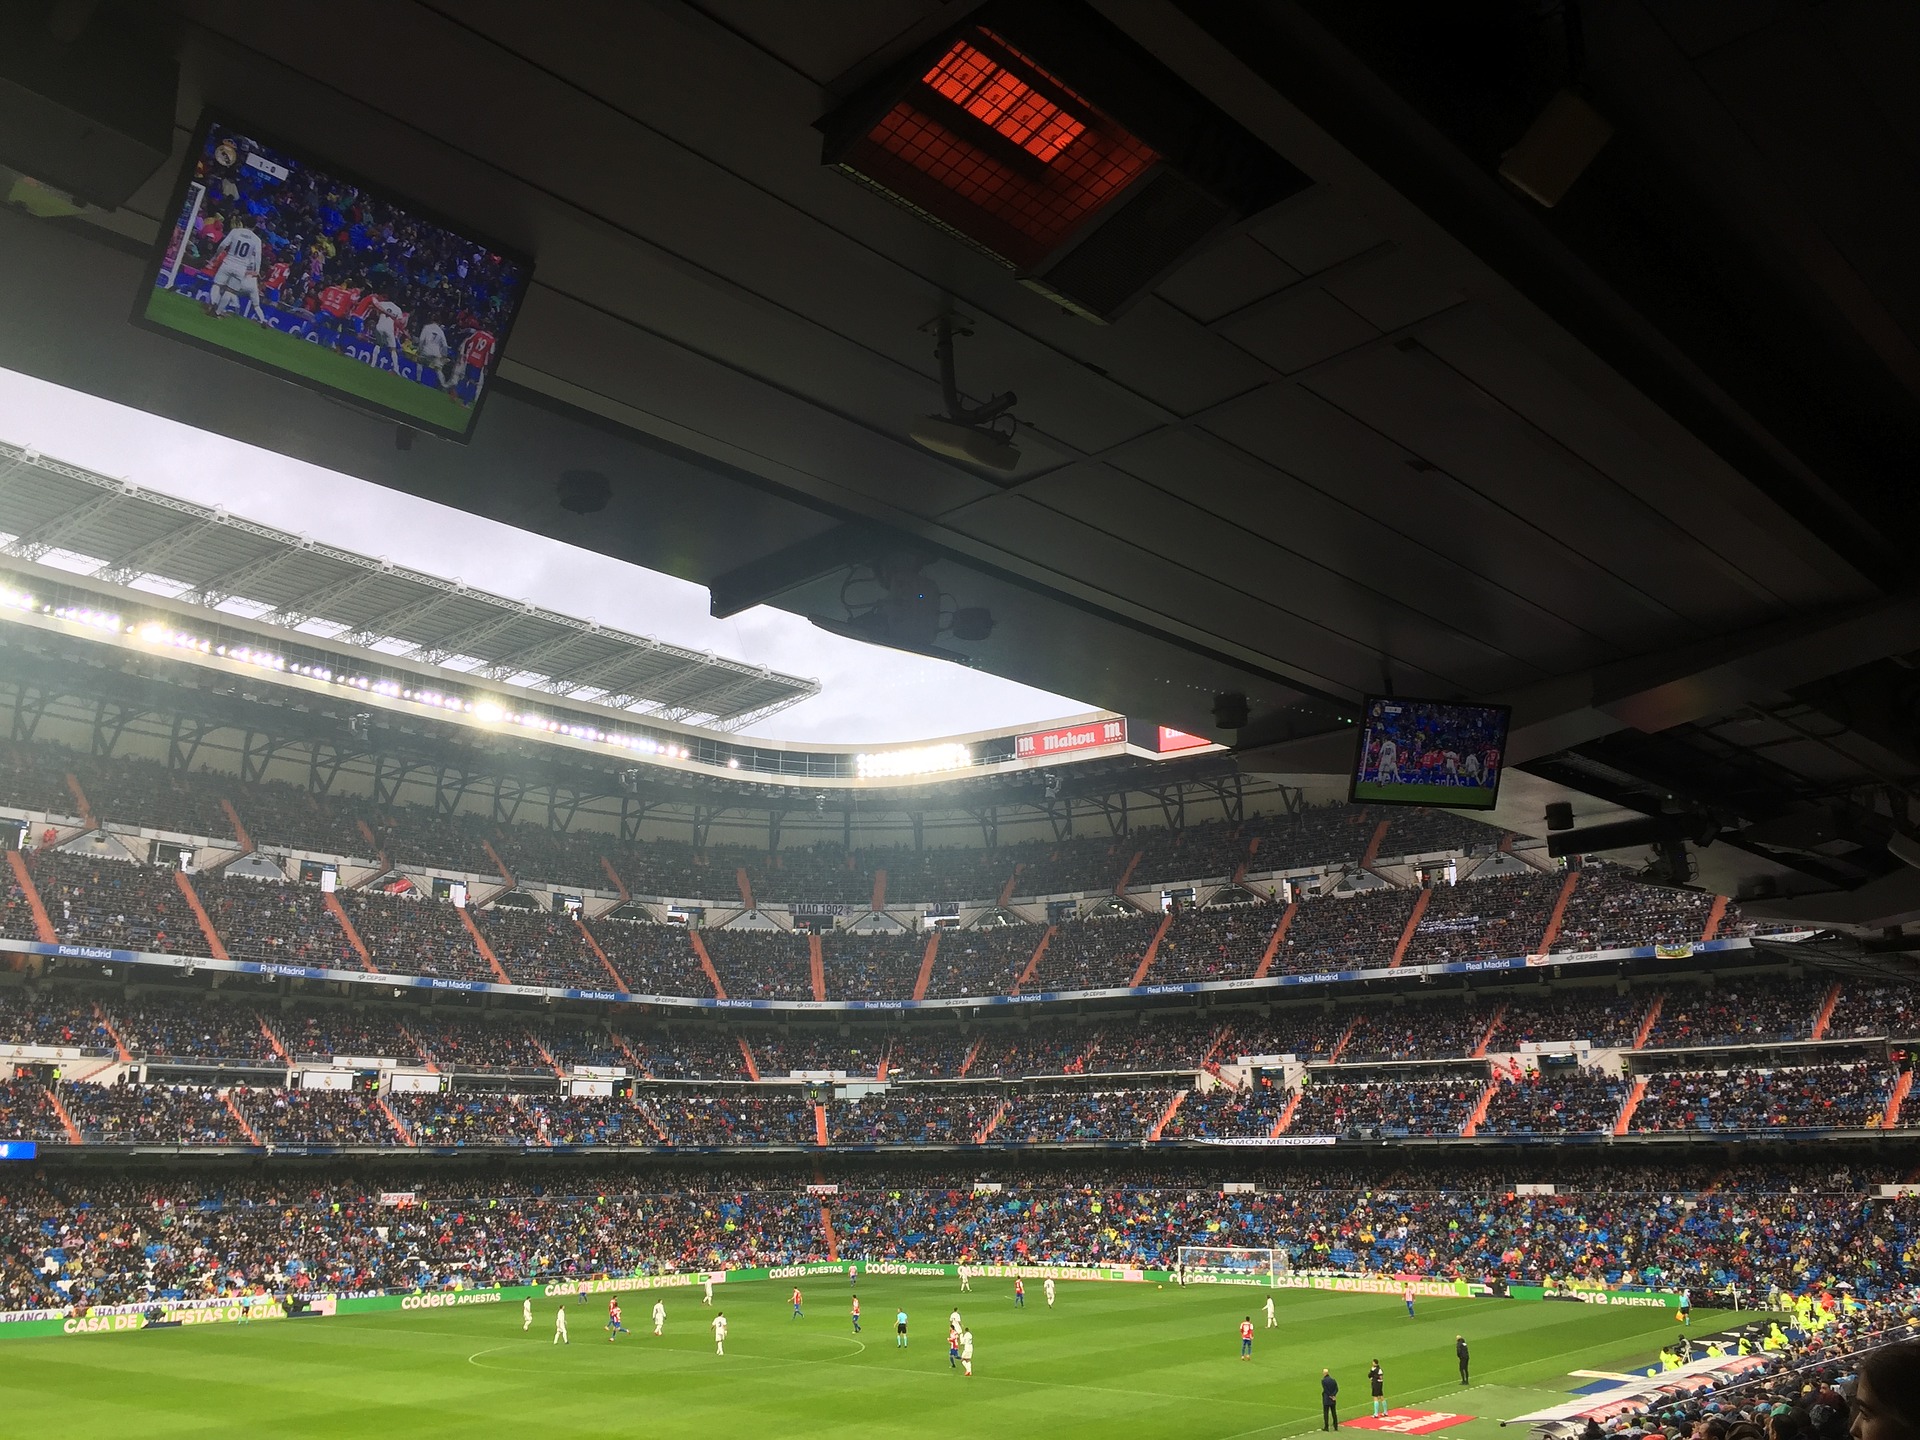 La Liga Tickets günstig kaufen Topsiele ab 80,00€ unterer Rang bei Real Madird die Stimmung hier ist überragend